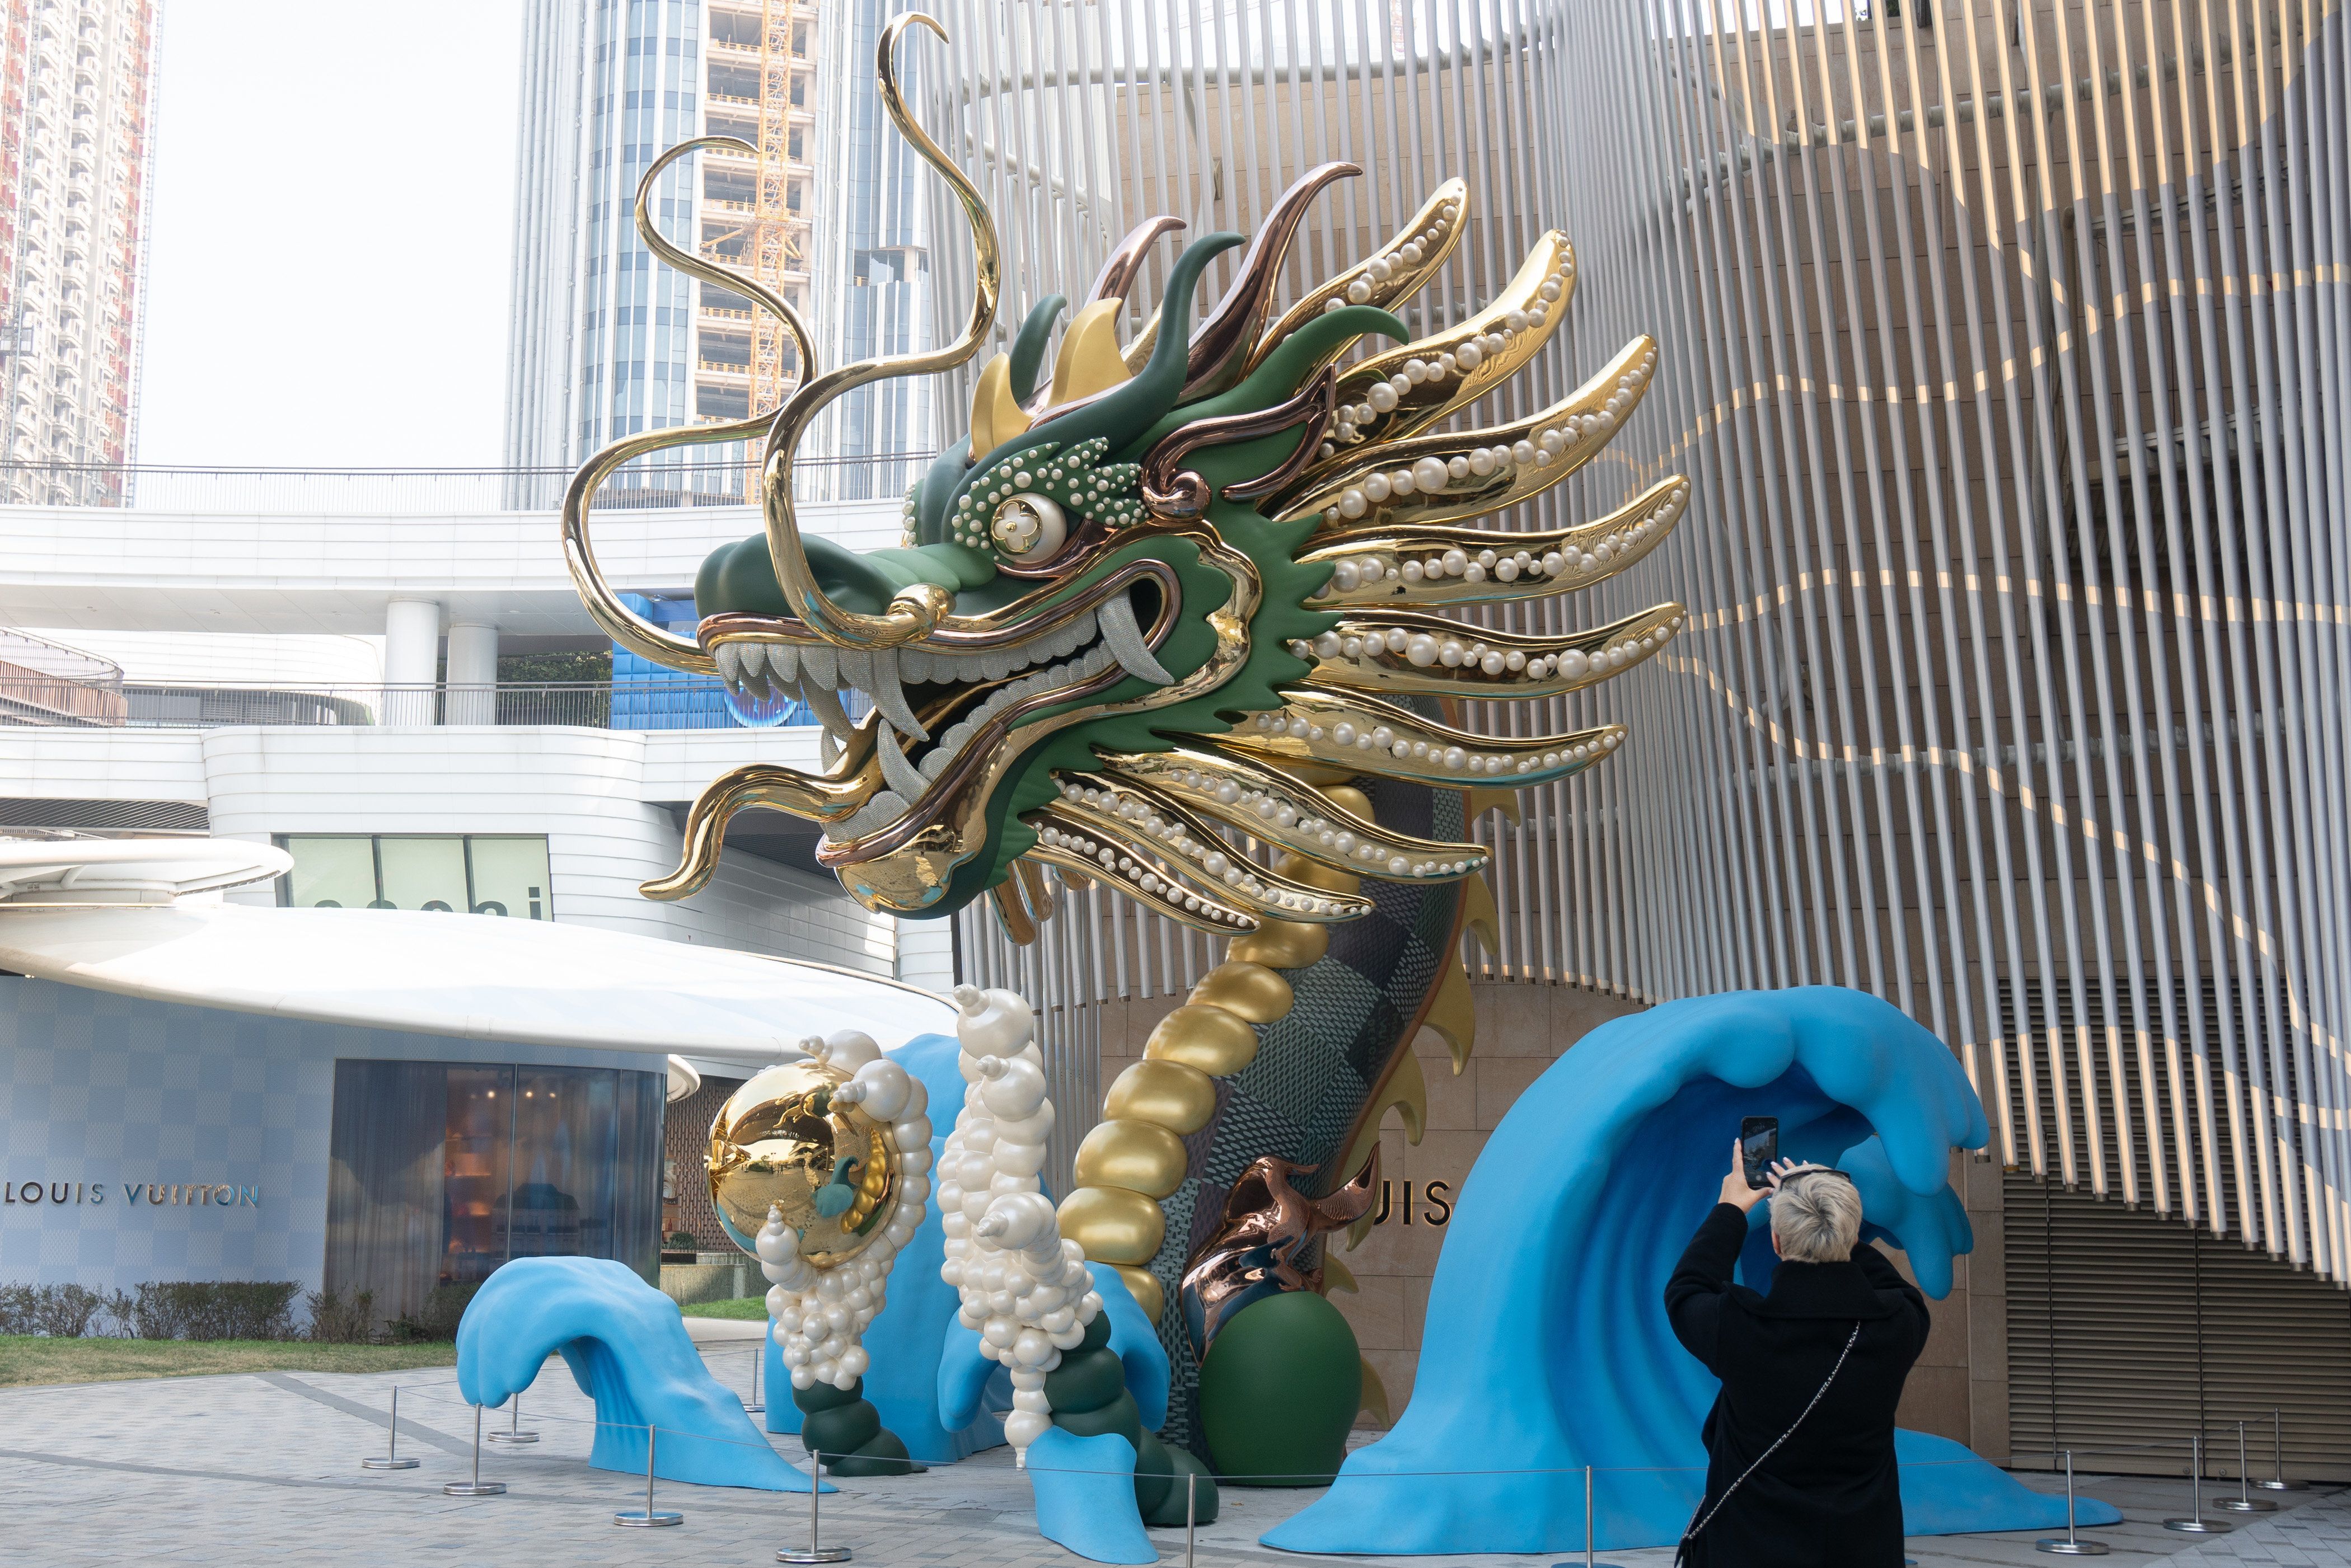 Gold-grüne Drachenstatue am Eingang eines Geschäfts in Shanghai, China.